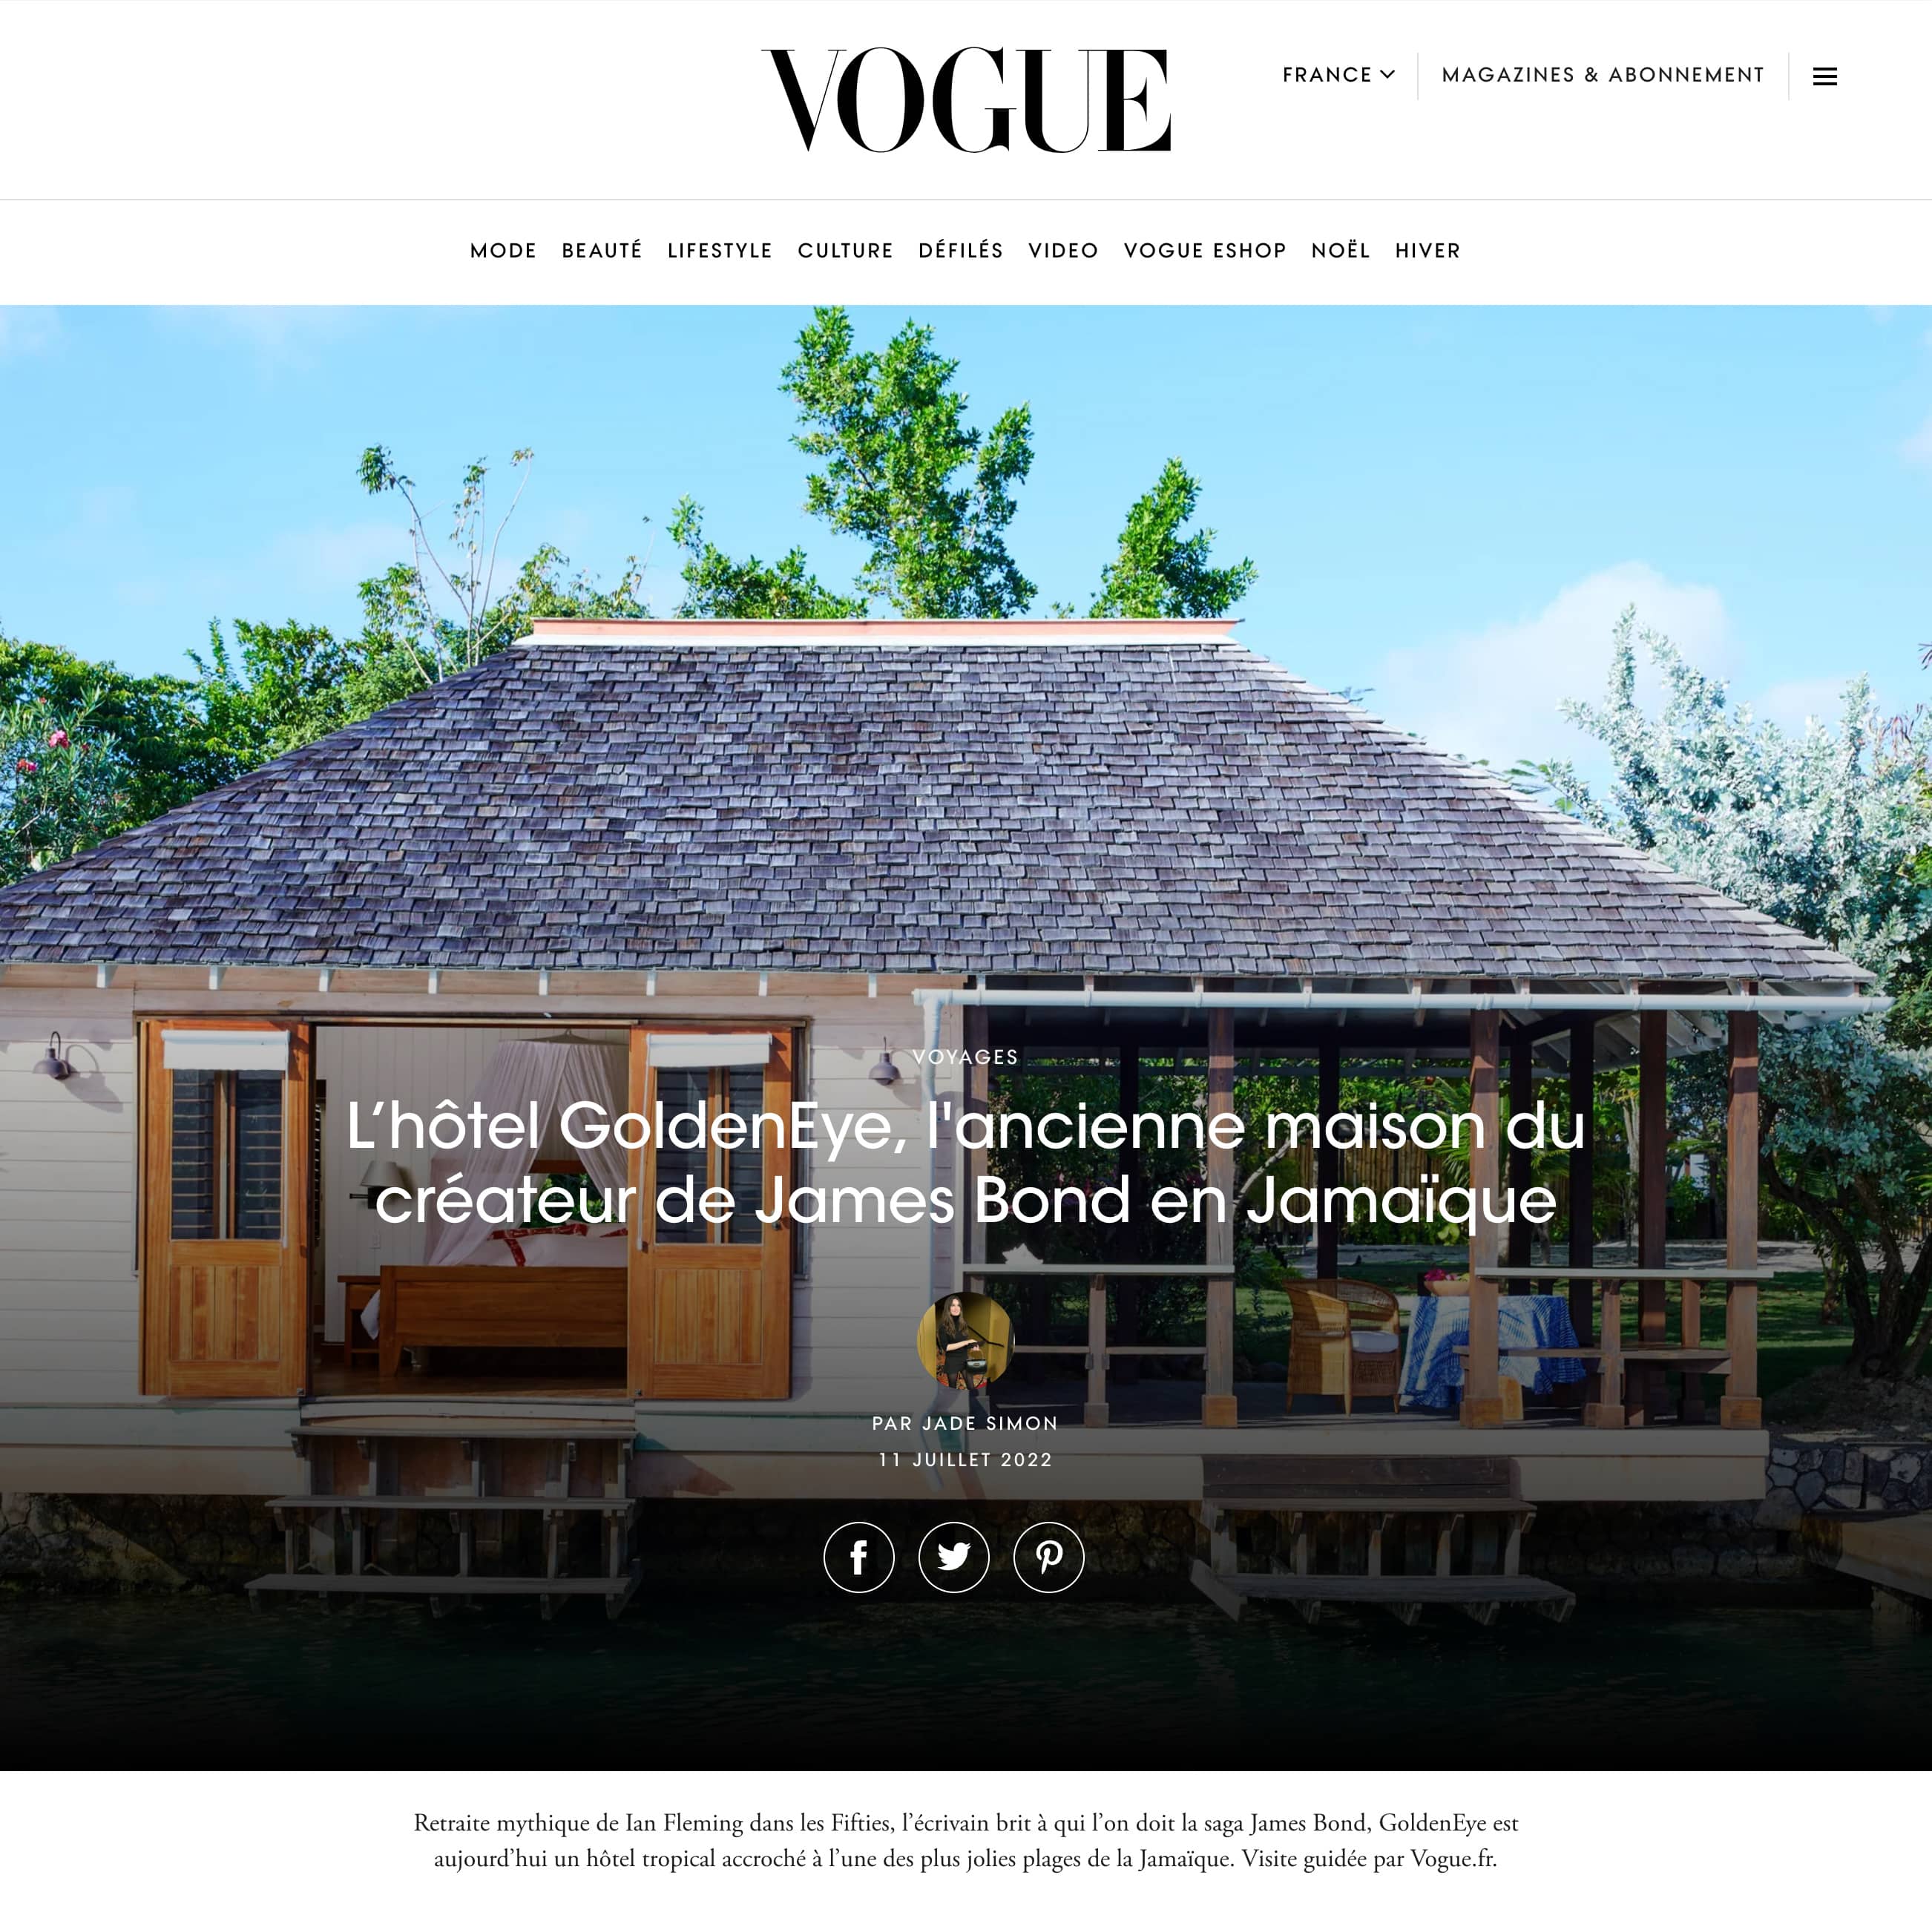 Vogue Lhotel GoldenEye lancienne maison du createur de James Bond en Jamaique